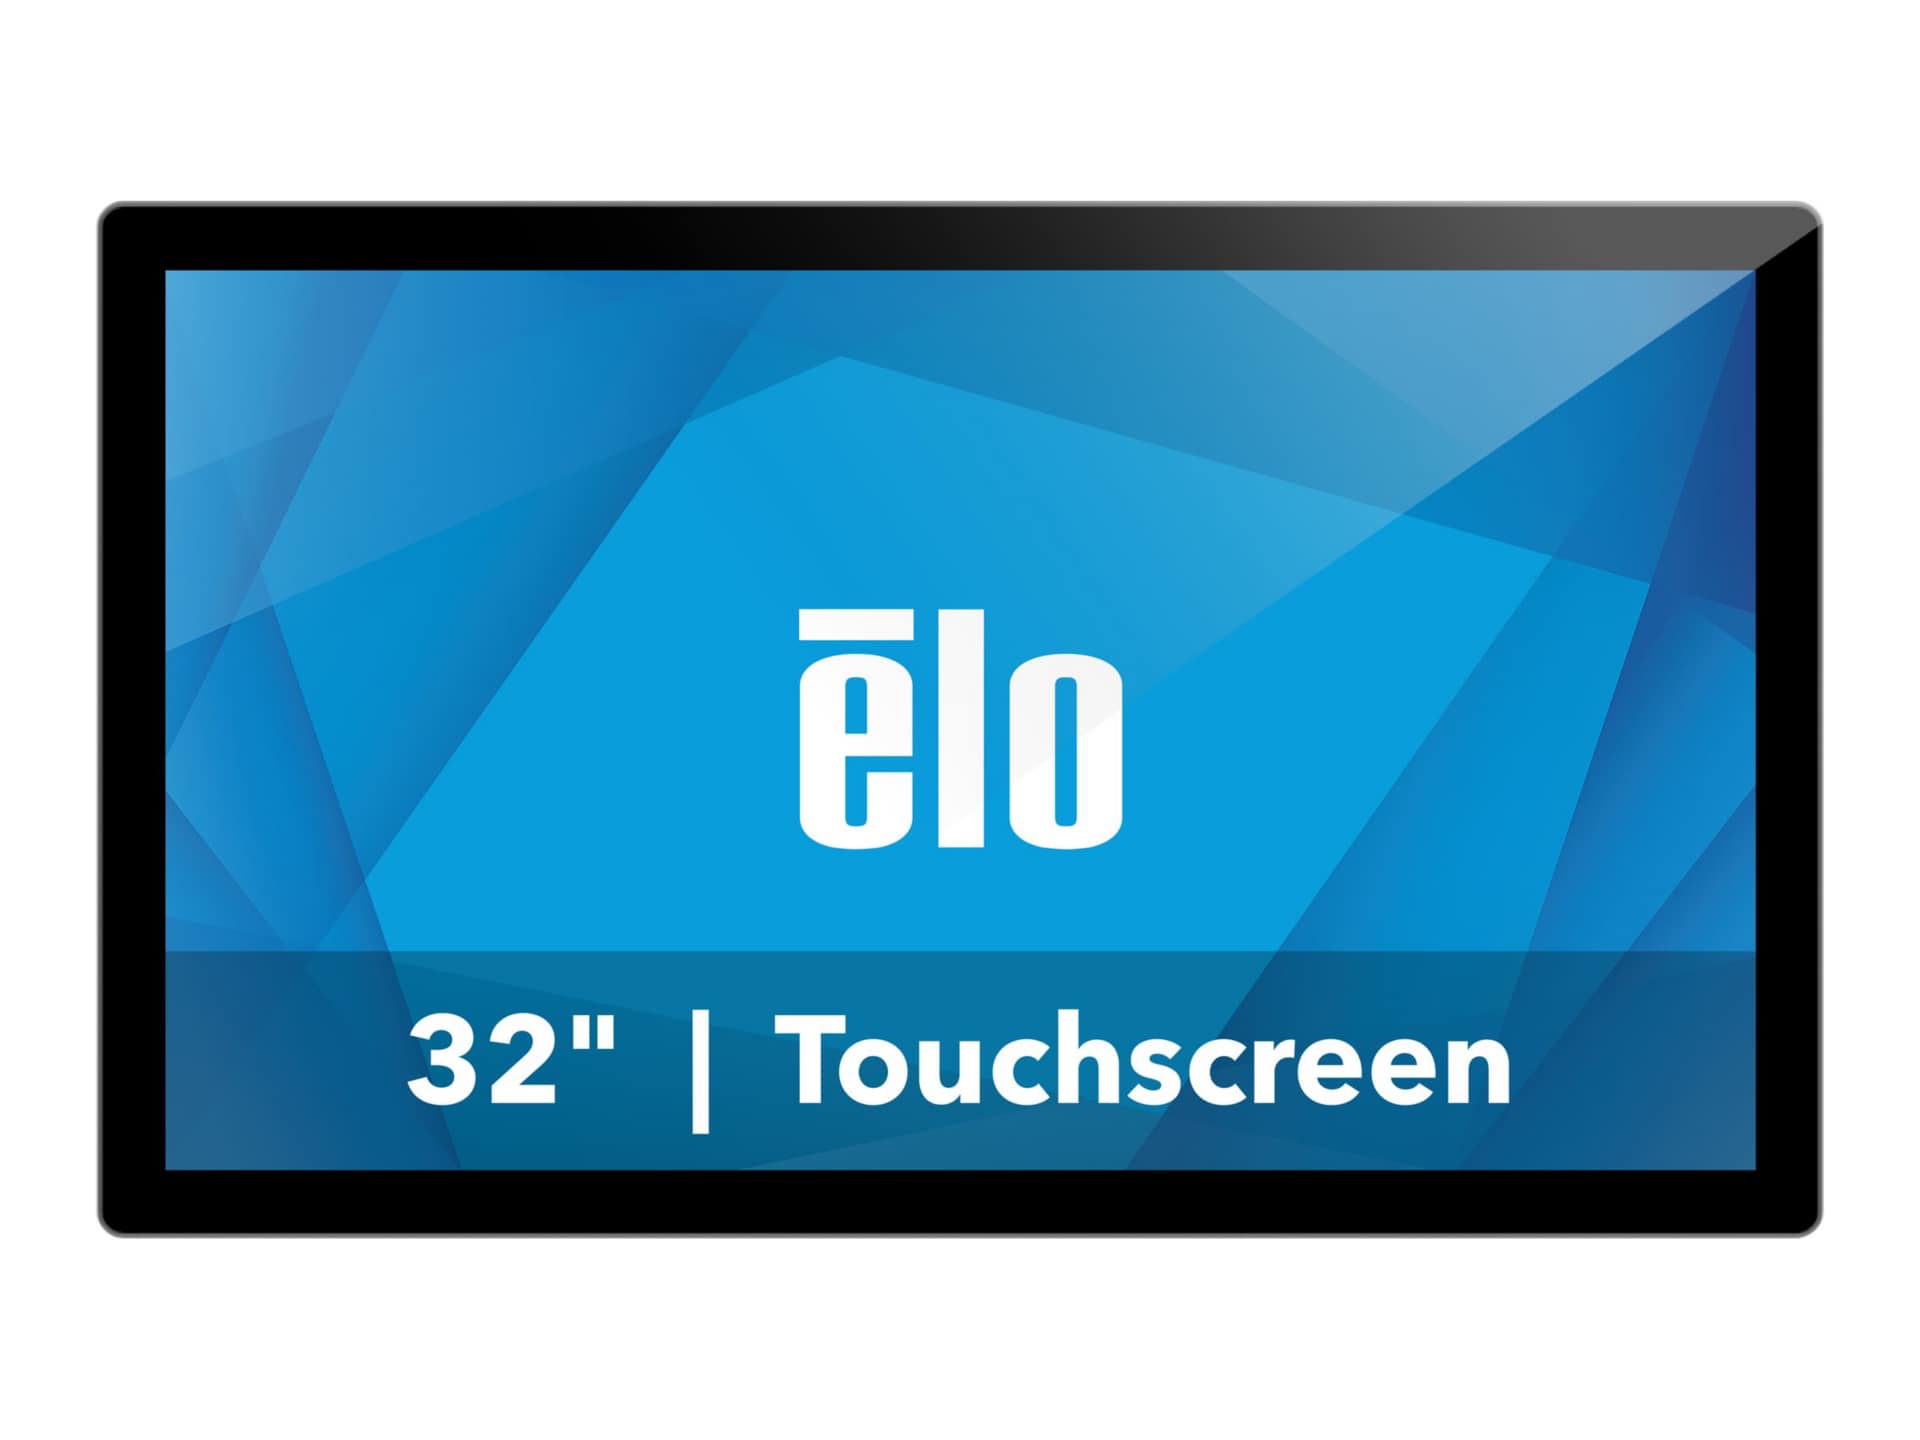 Elo 3203L - LED monitor - Full HD (1080p) - 32"